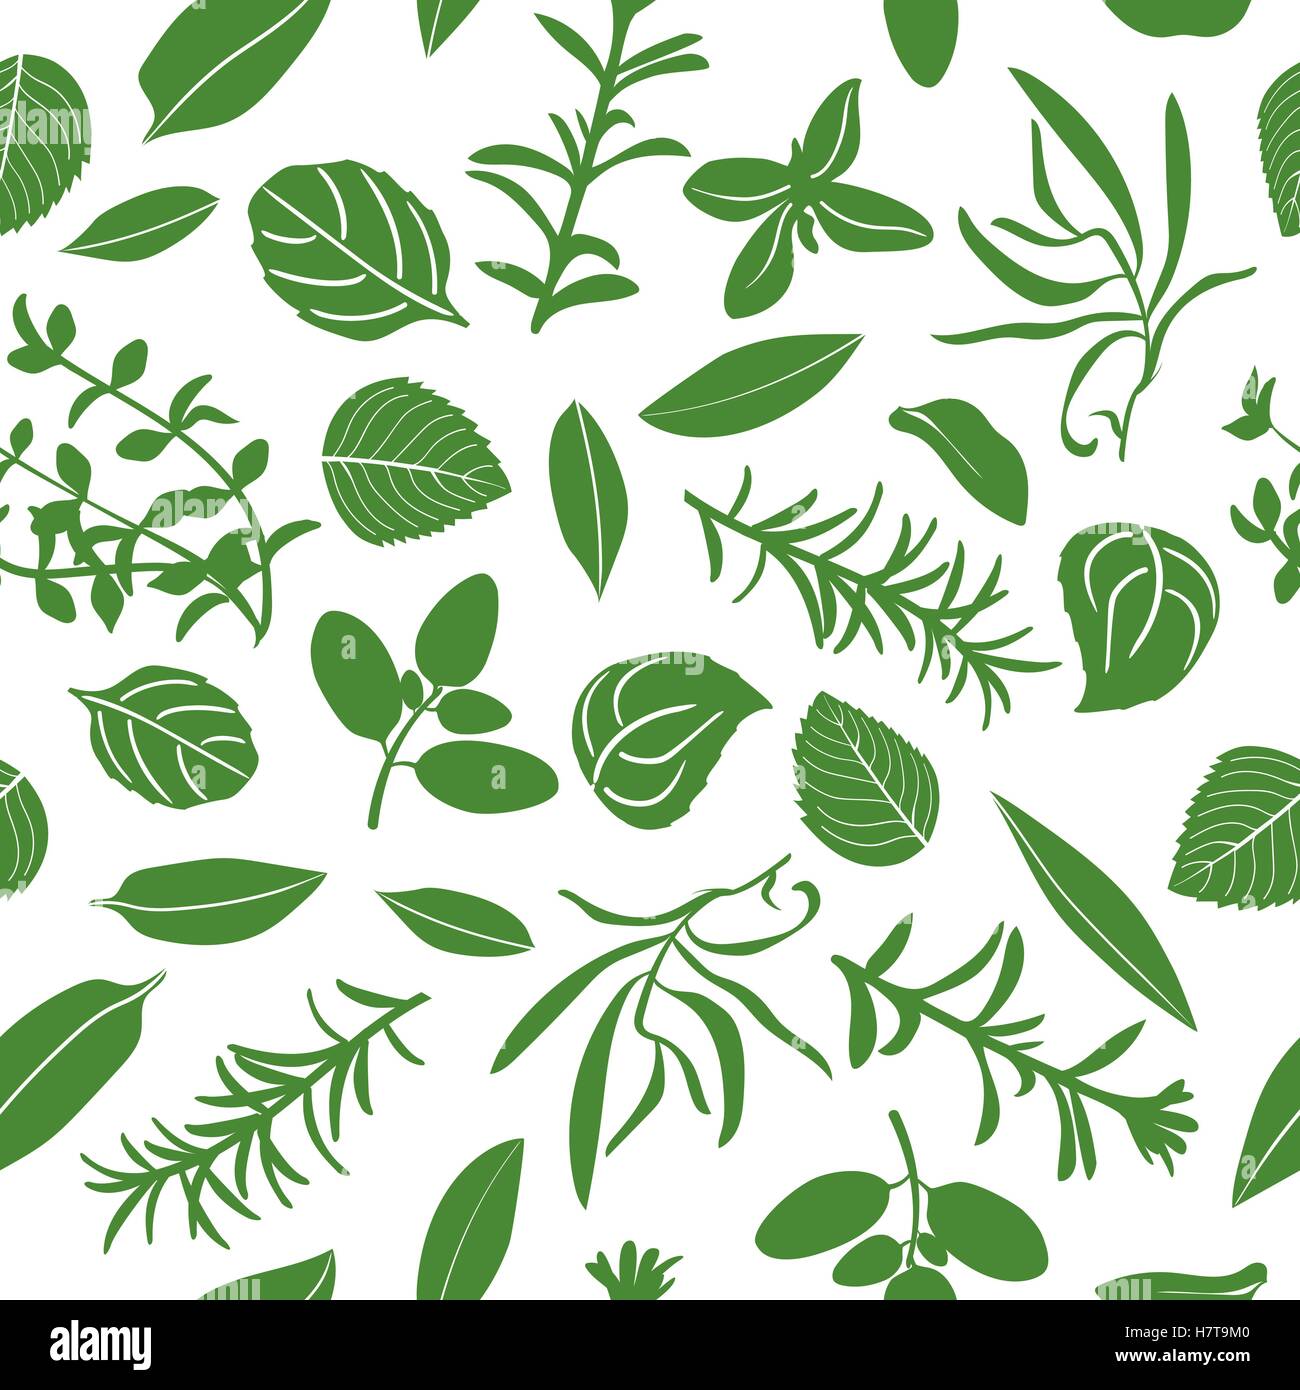 Herbes de Provence Musterdesign Vektor-Set. Beliebte Küchenkräuter. Design für Kosmetik, Restaurant, Shop, Markt, natürliche Stock Vektor